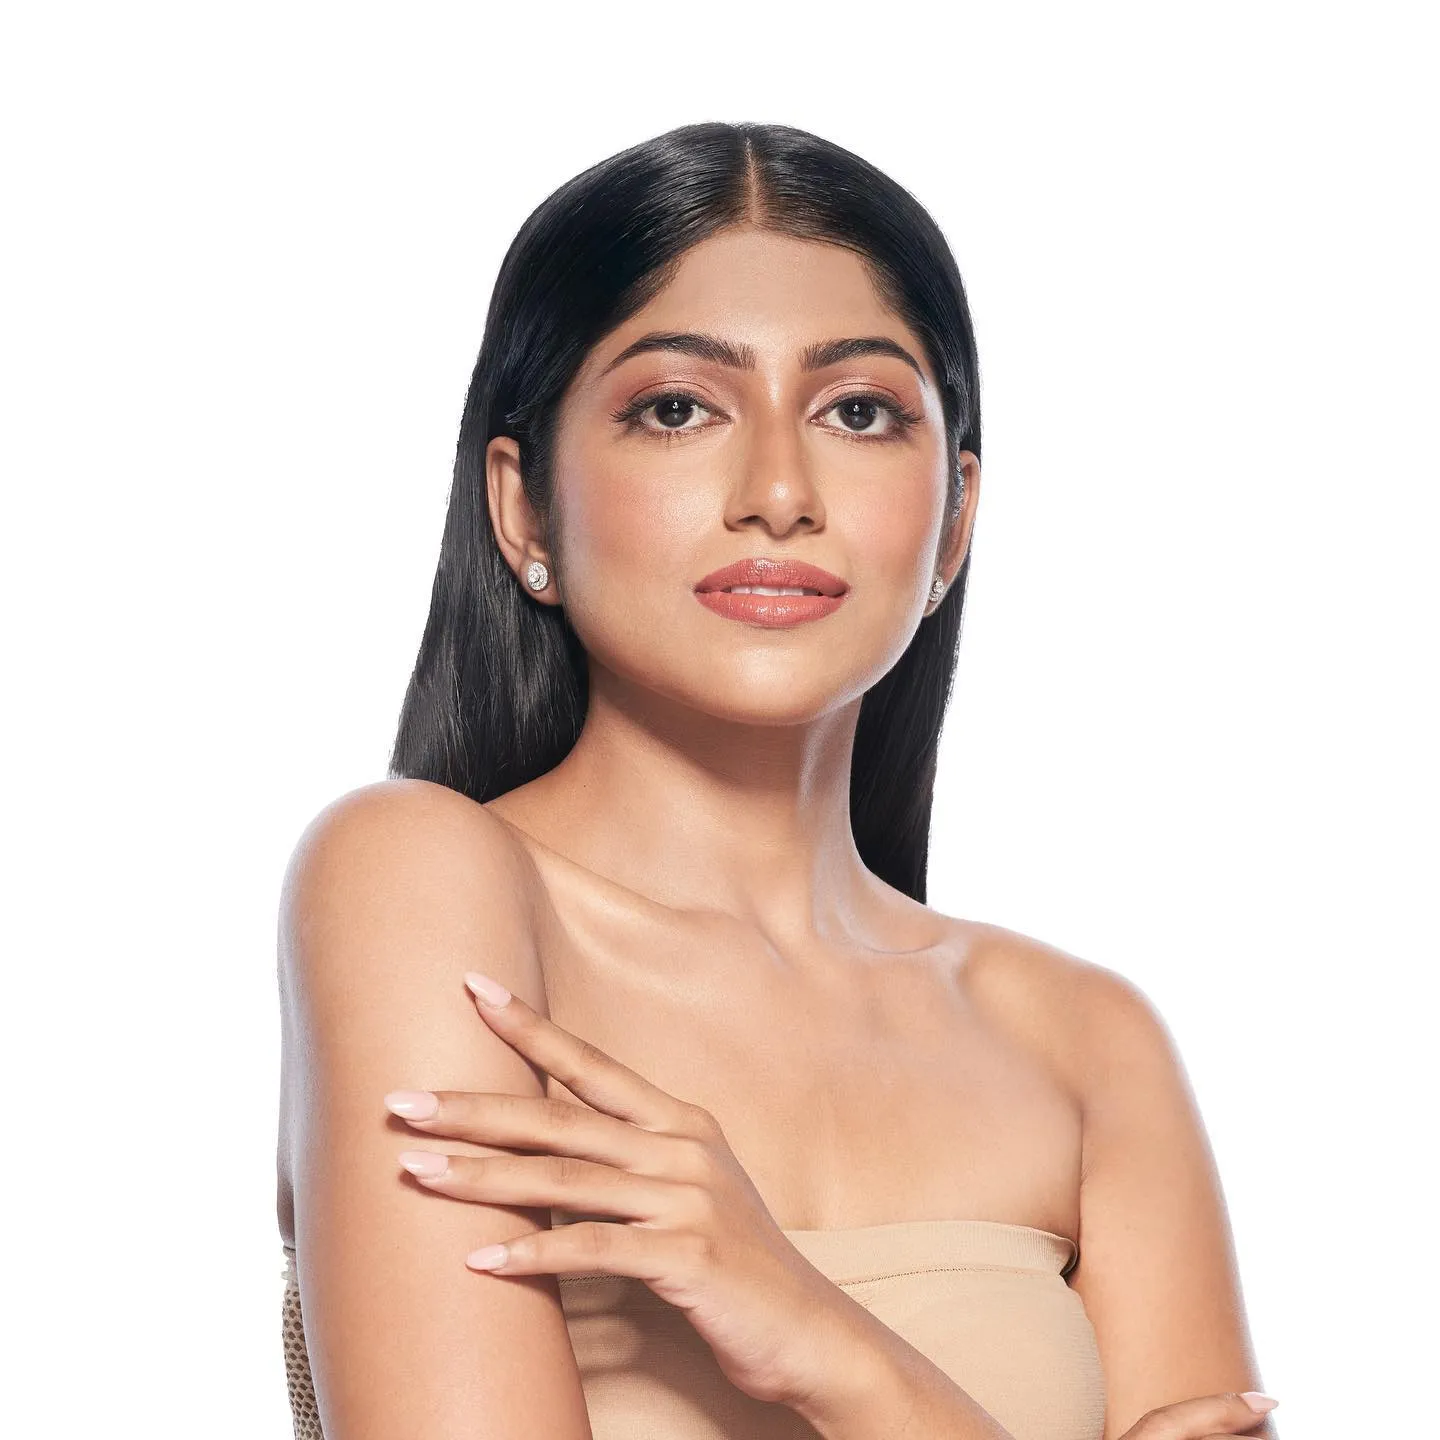  karnataka vence femina miss india 2022.   JKG1Ag